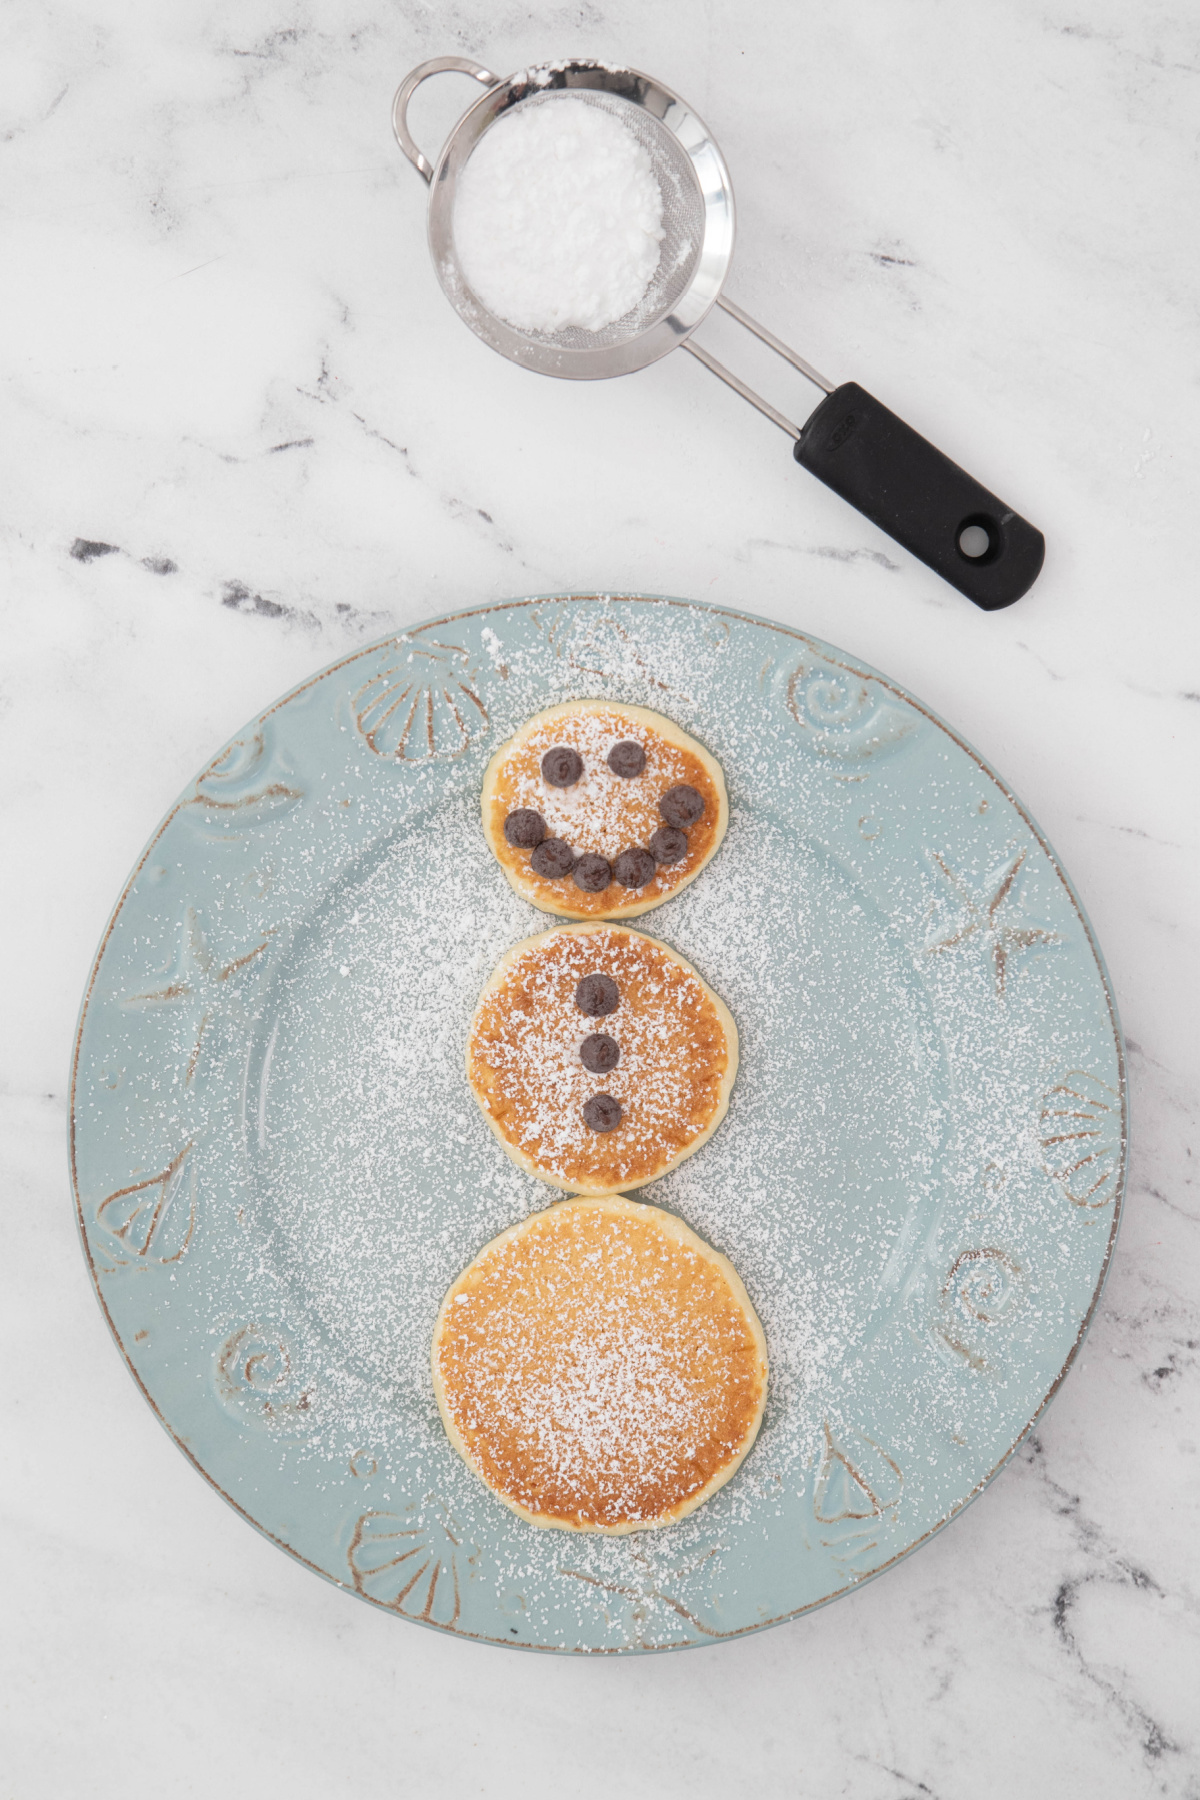 Pancakes shaped like a snowman on a plate.